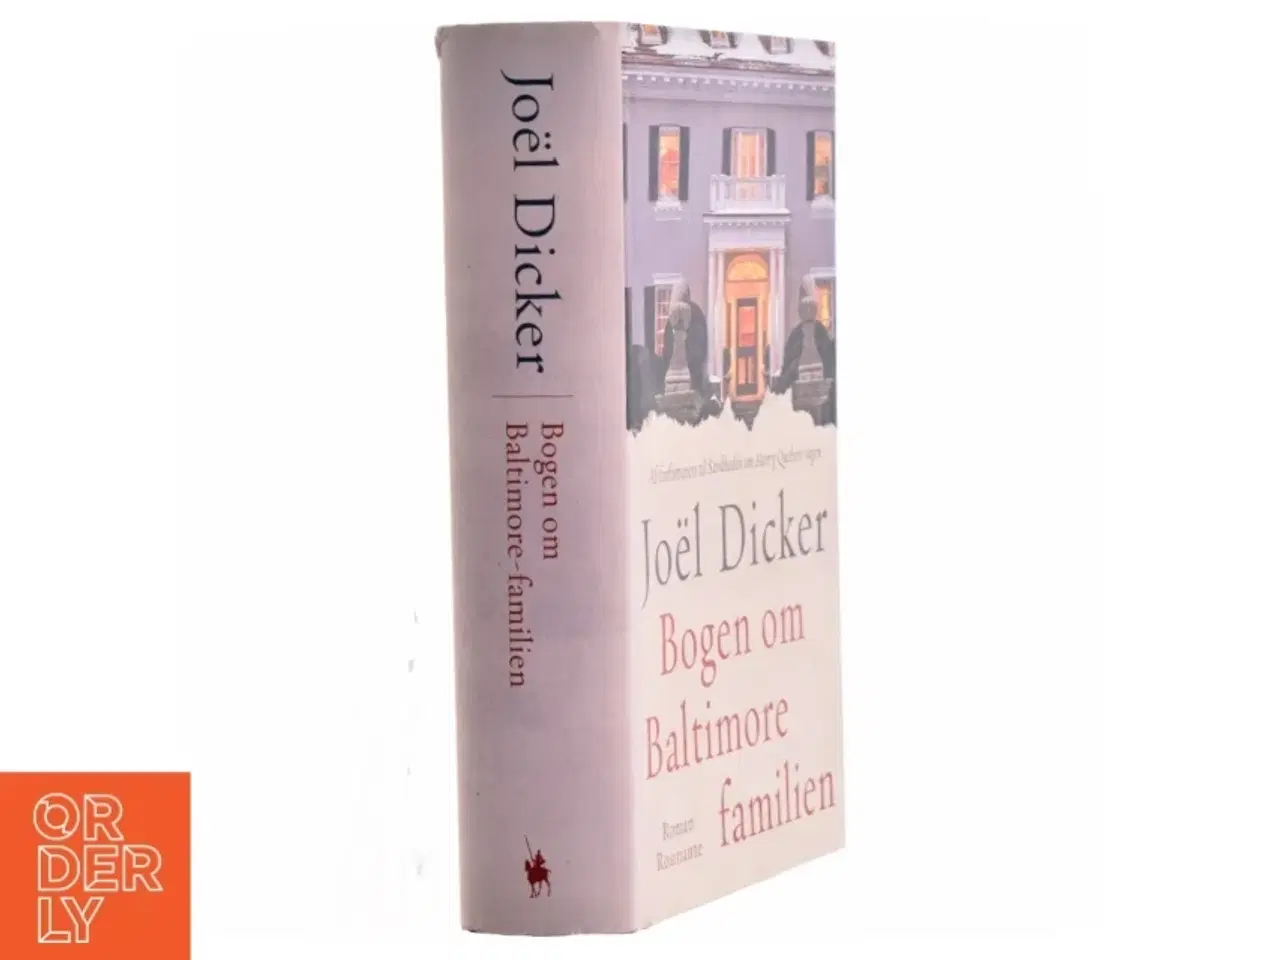 Billede 1 - Bogen om Baltimore-familien : roman af Joël Dicker (Bog)